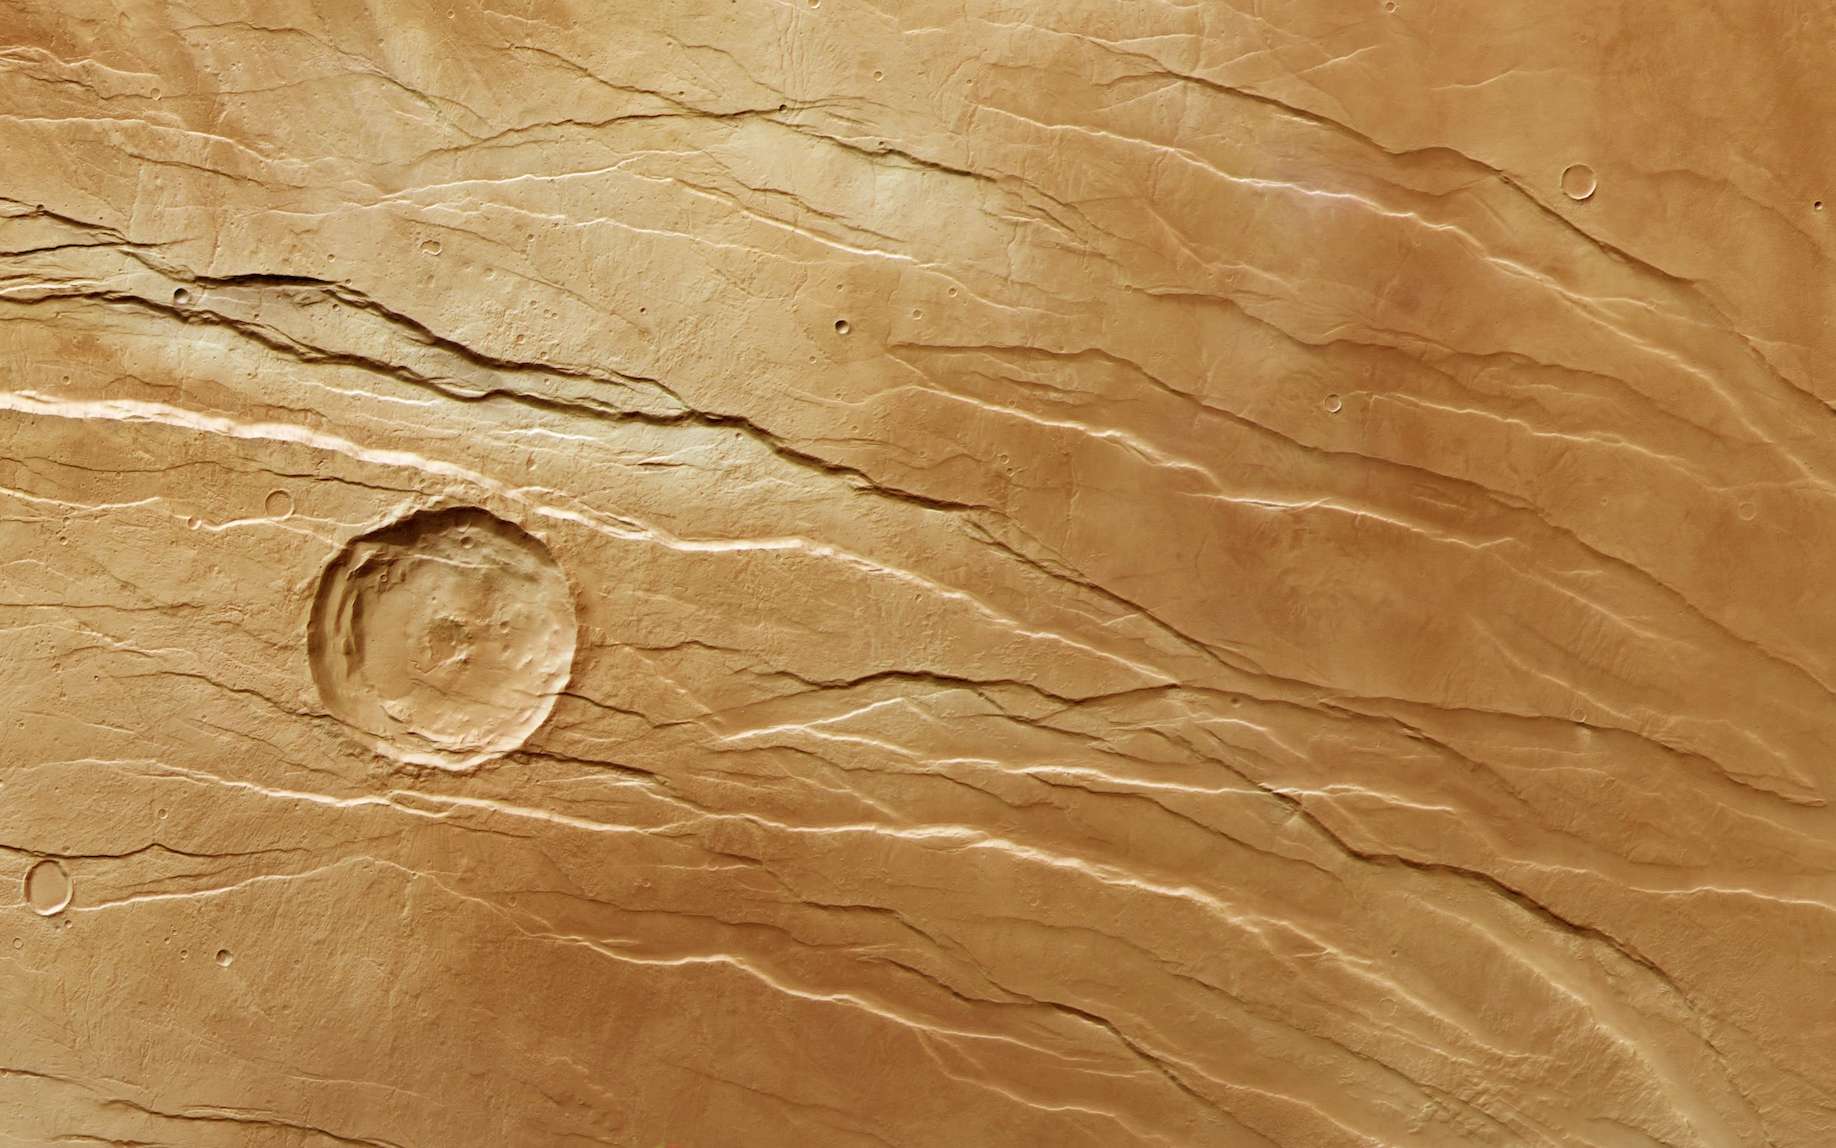 Qu'est-ce qui a crée ces failles à la surface de Mars ?